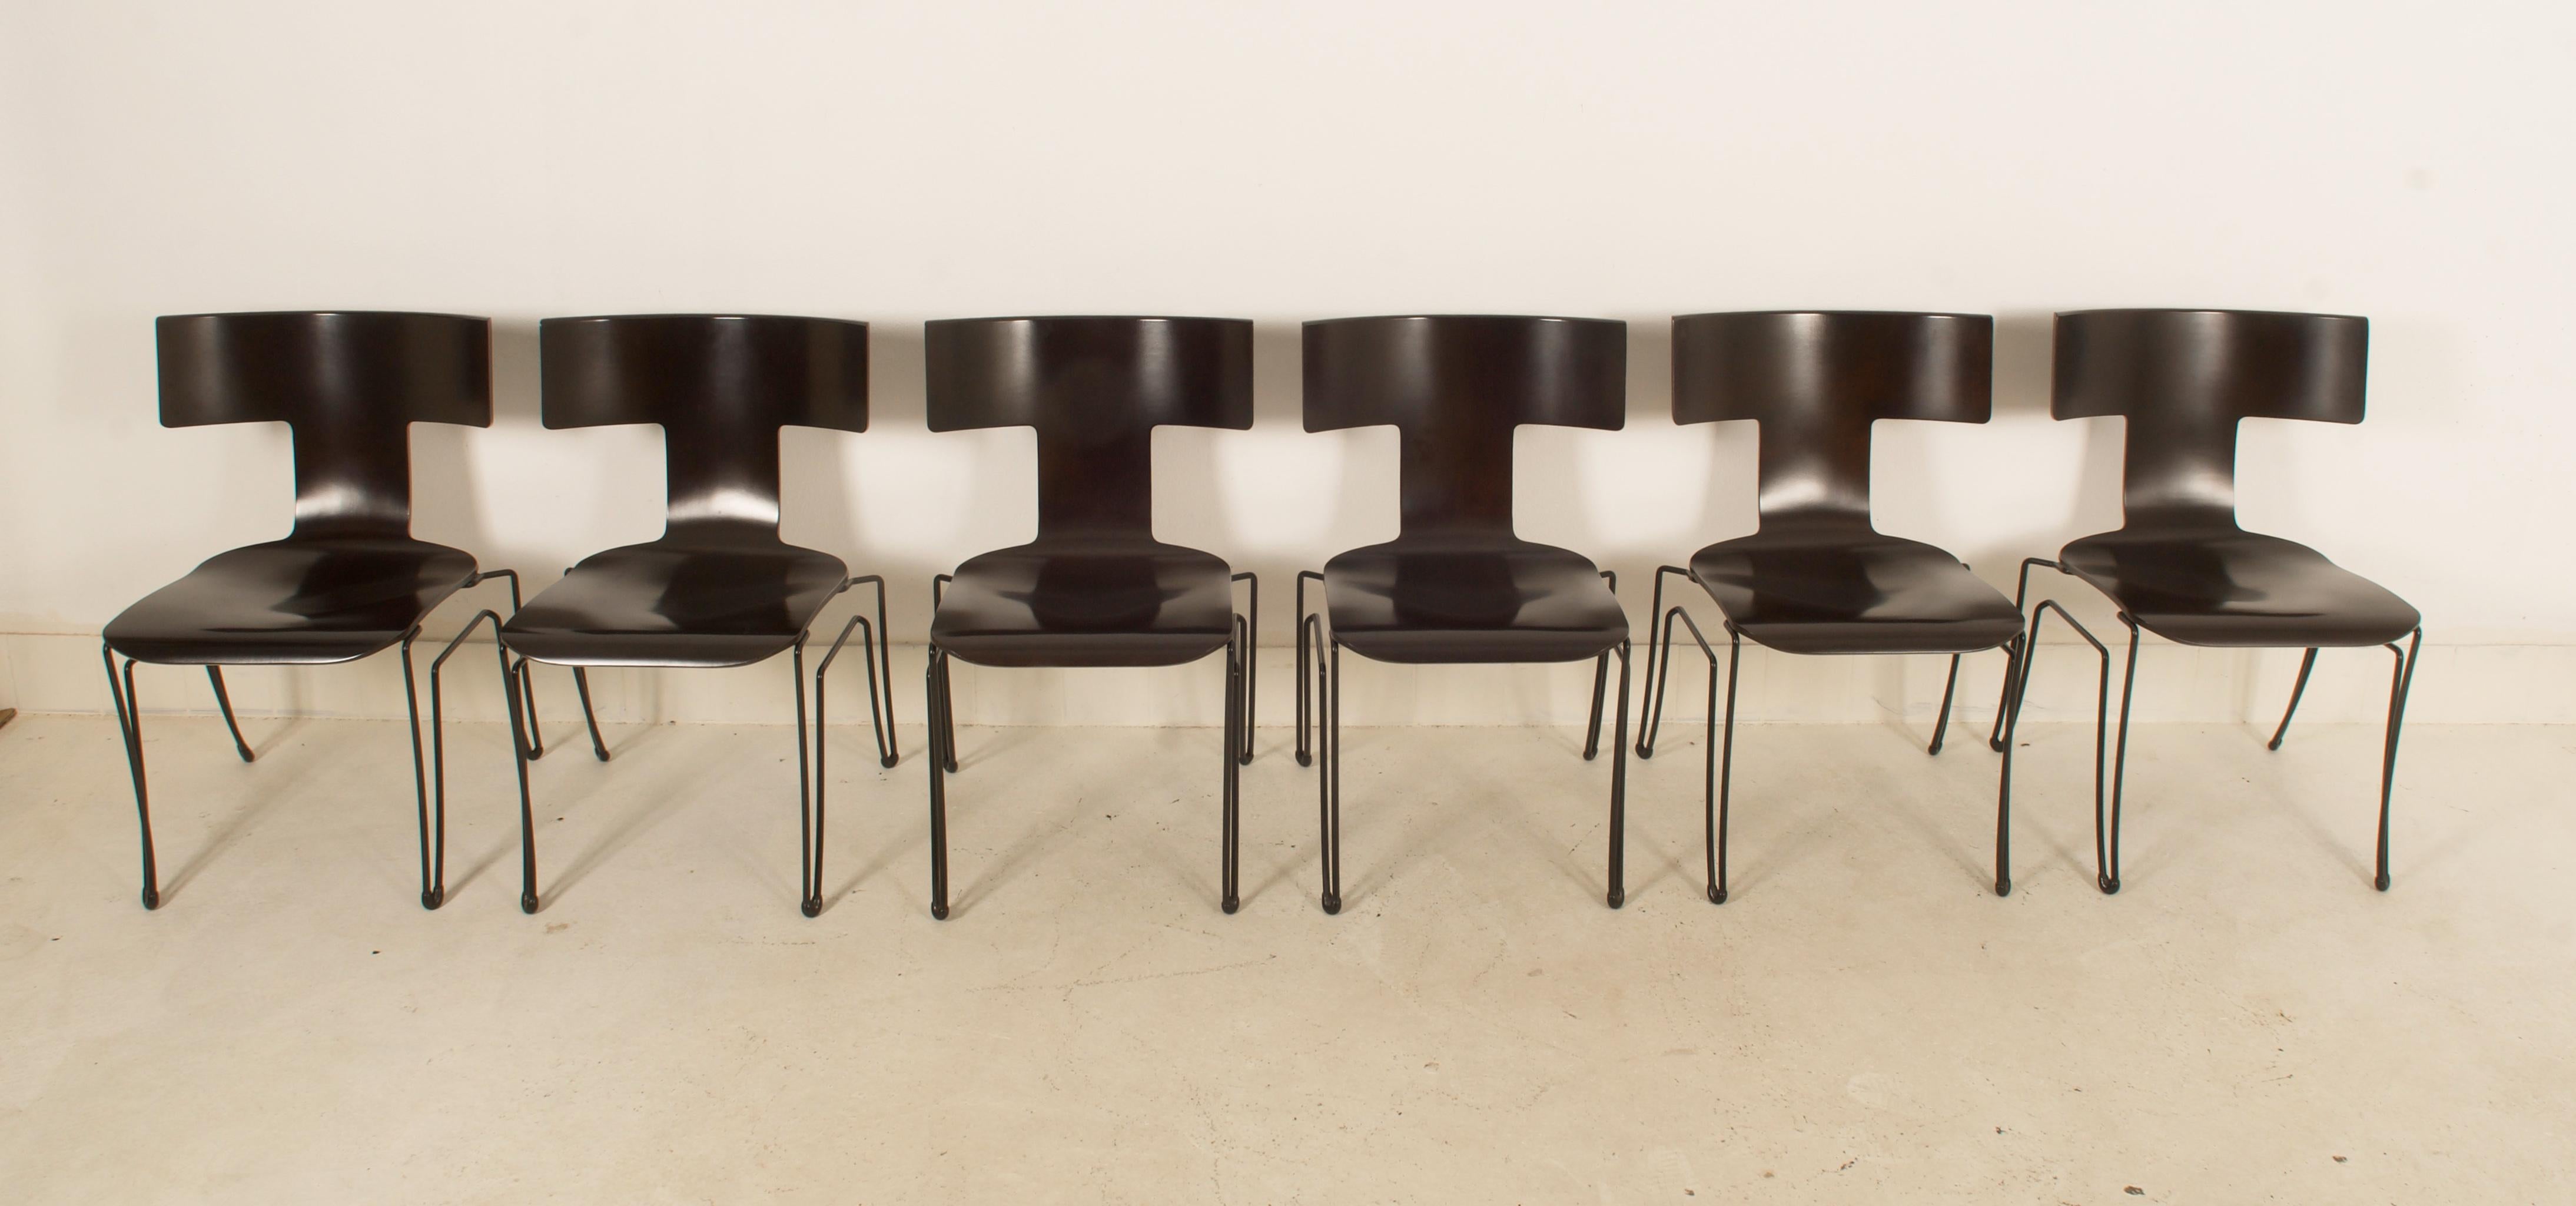 Cet ensemble de 12 chaises a été produit par Donghia dans les années 1980. Le modèle Anziano a été conçu par John Hutton. Les structures sont en fil d'acier revêtu de noir, les sièges sont en placage de hêtre moulé. Les chaises sont empilables. Très